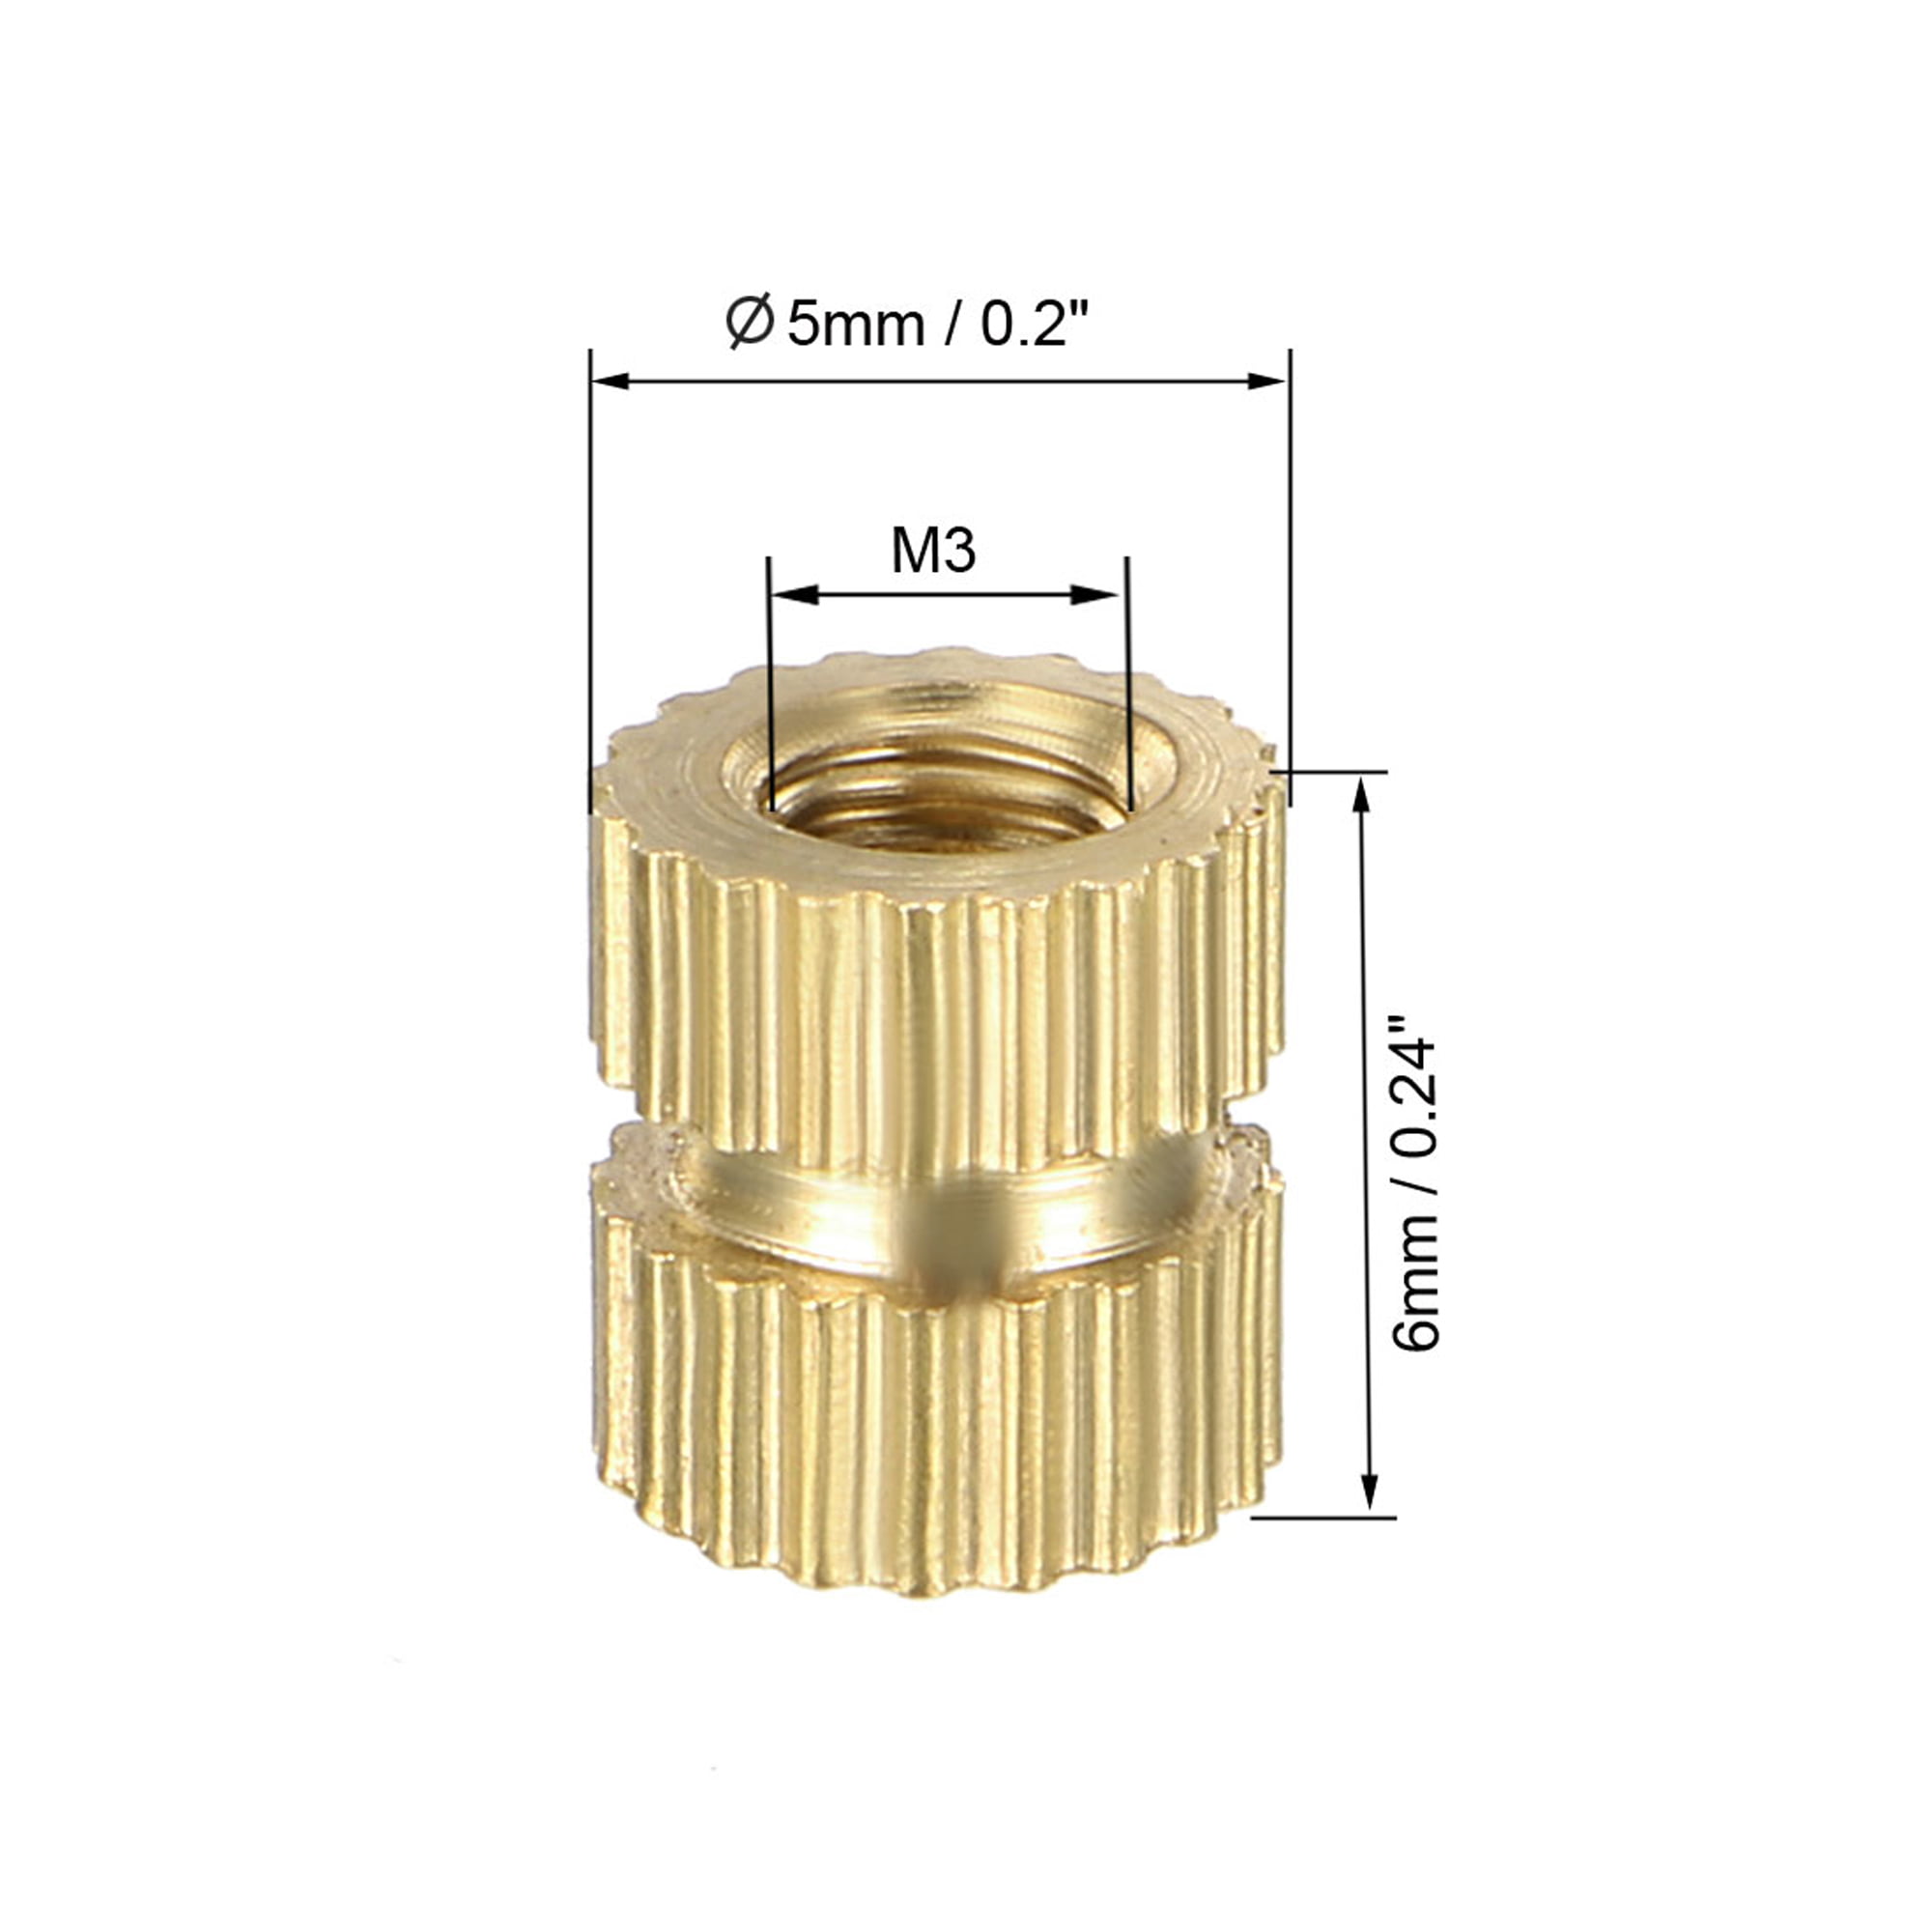 M3 x 6mm(L) x 5mm(OD) Brass Knurled Threaded Insert Embedment Nuts 50 Pcs 